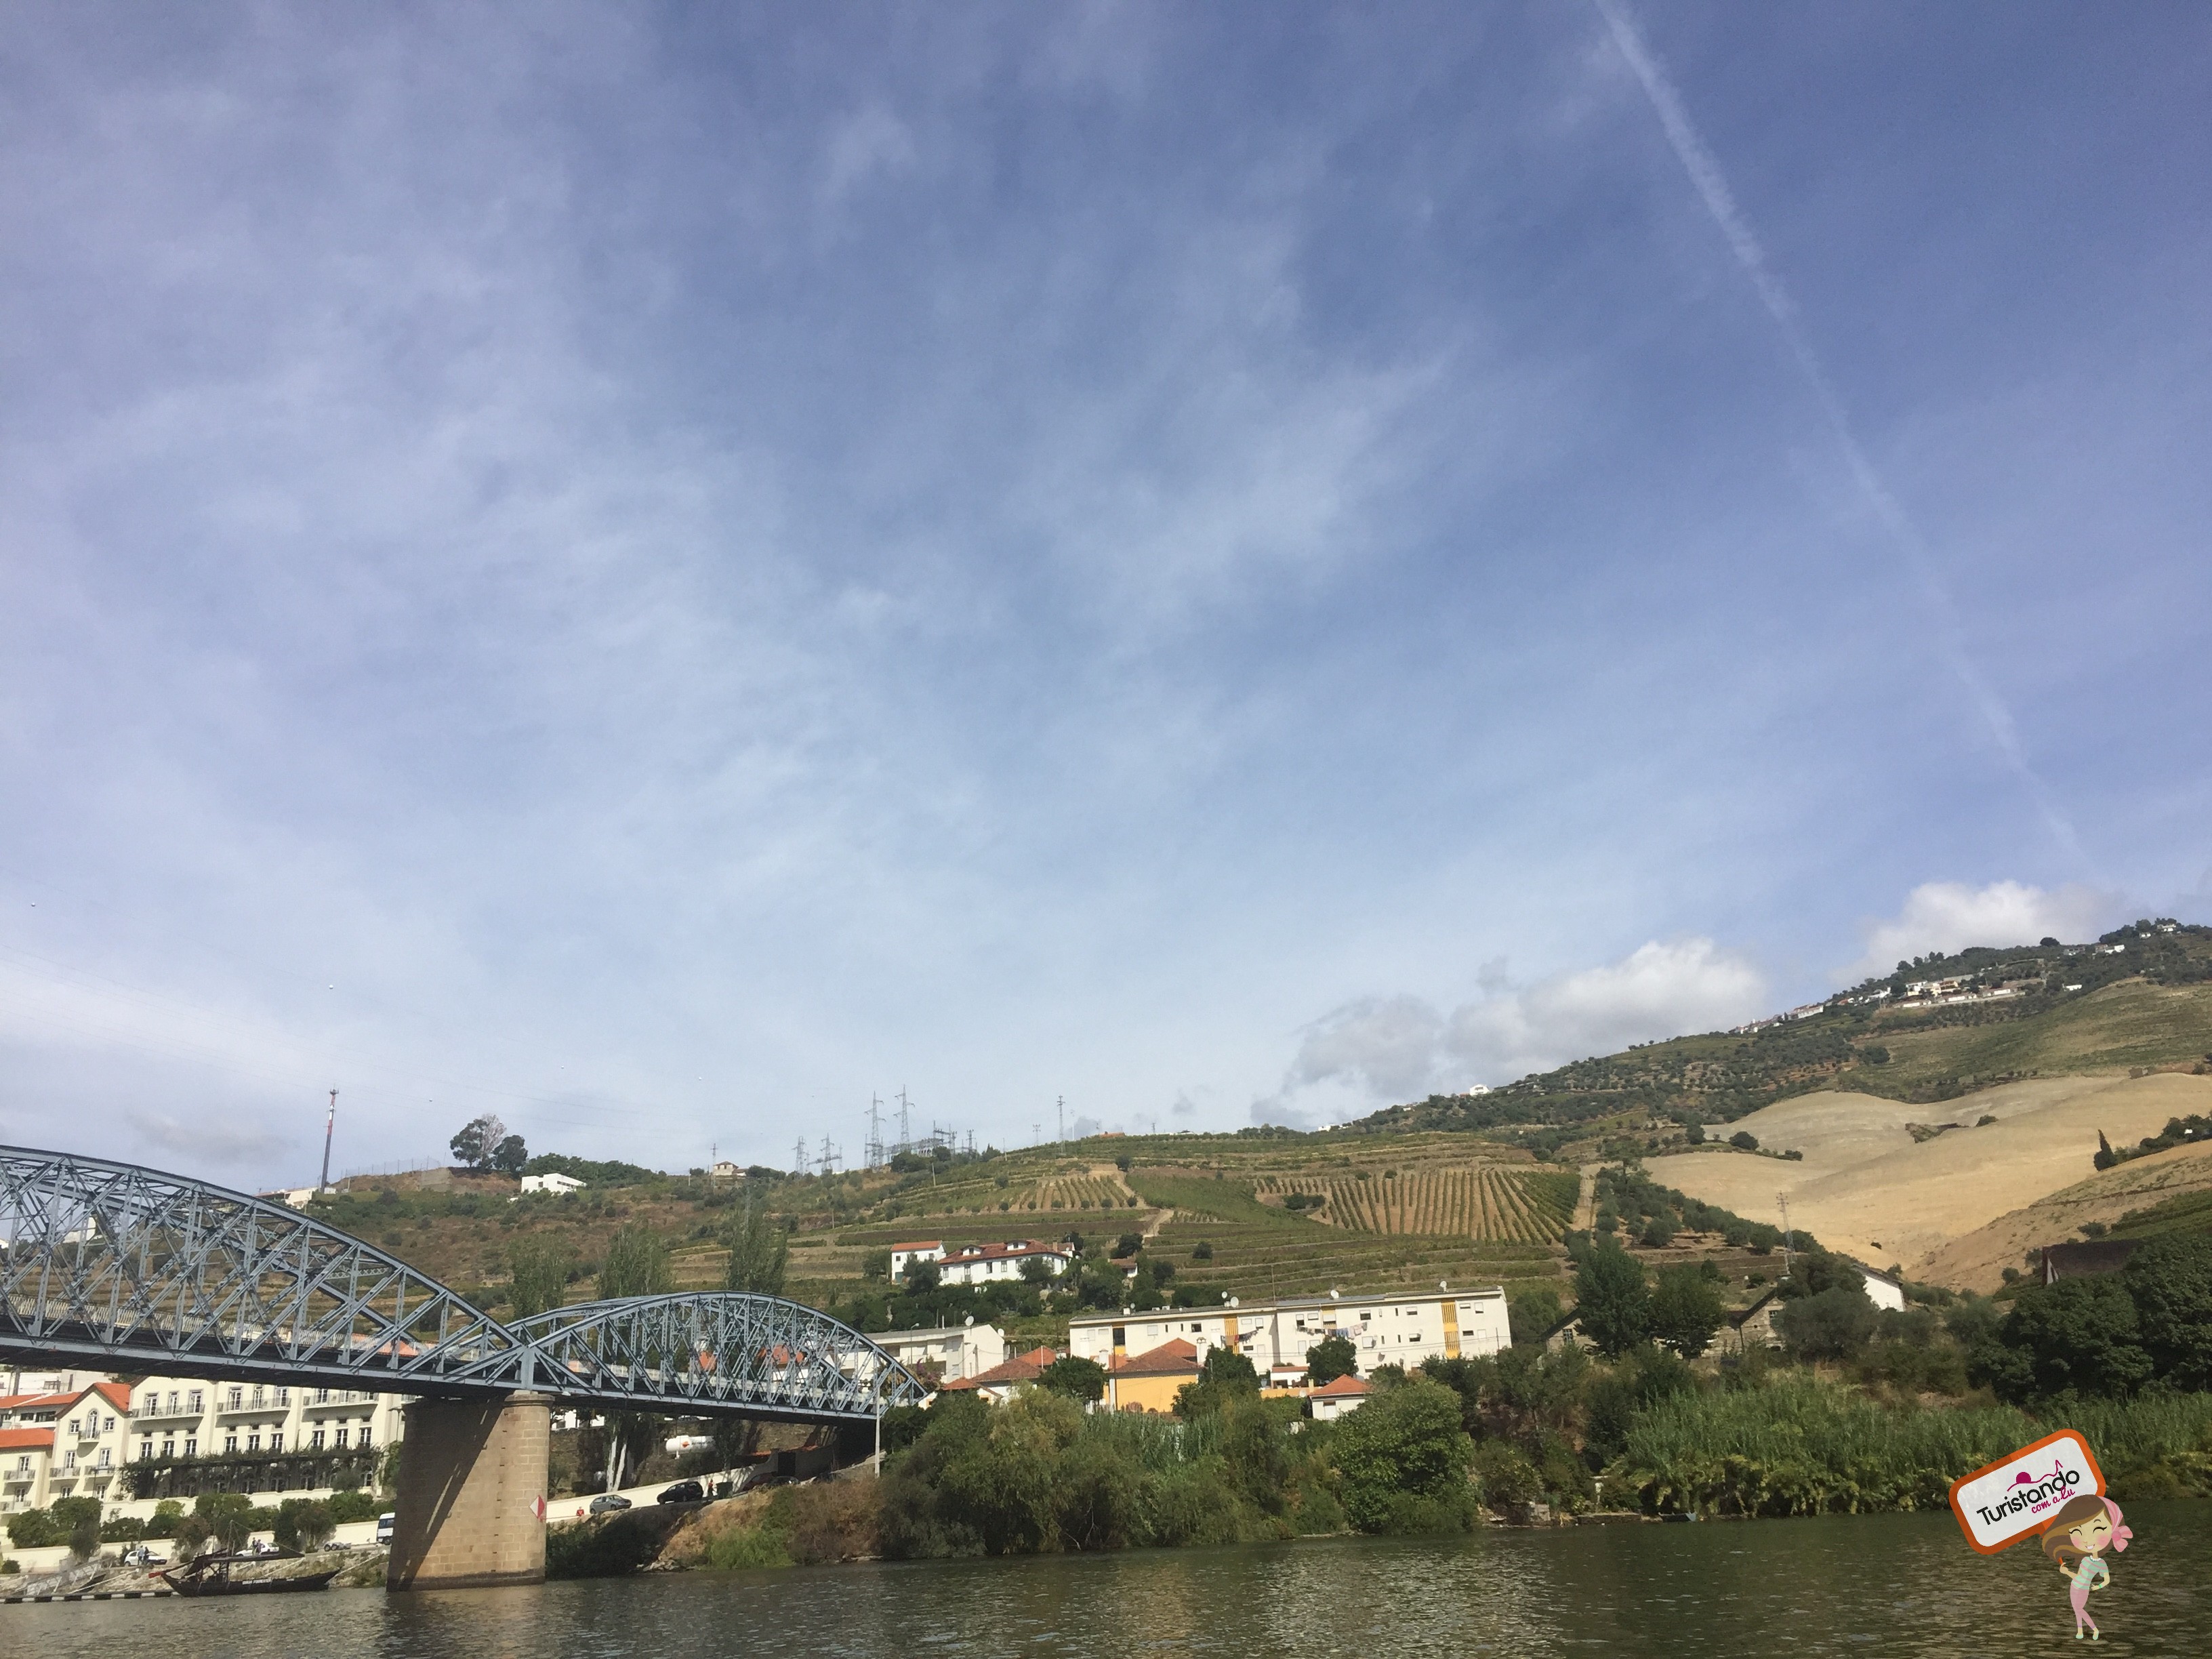 Passeio de barco Rabelo em Pinhão - Vale do Douro